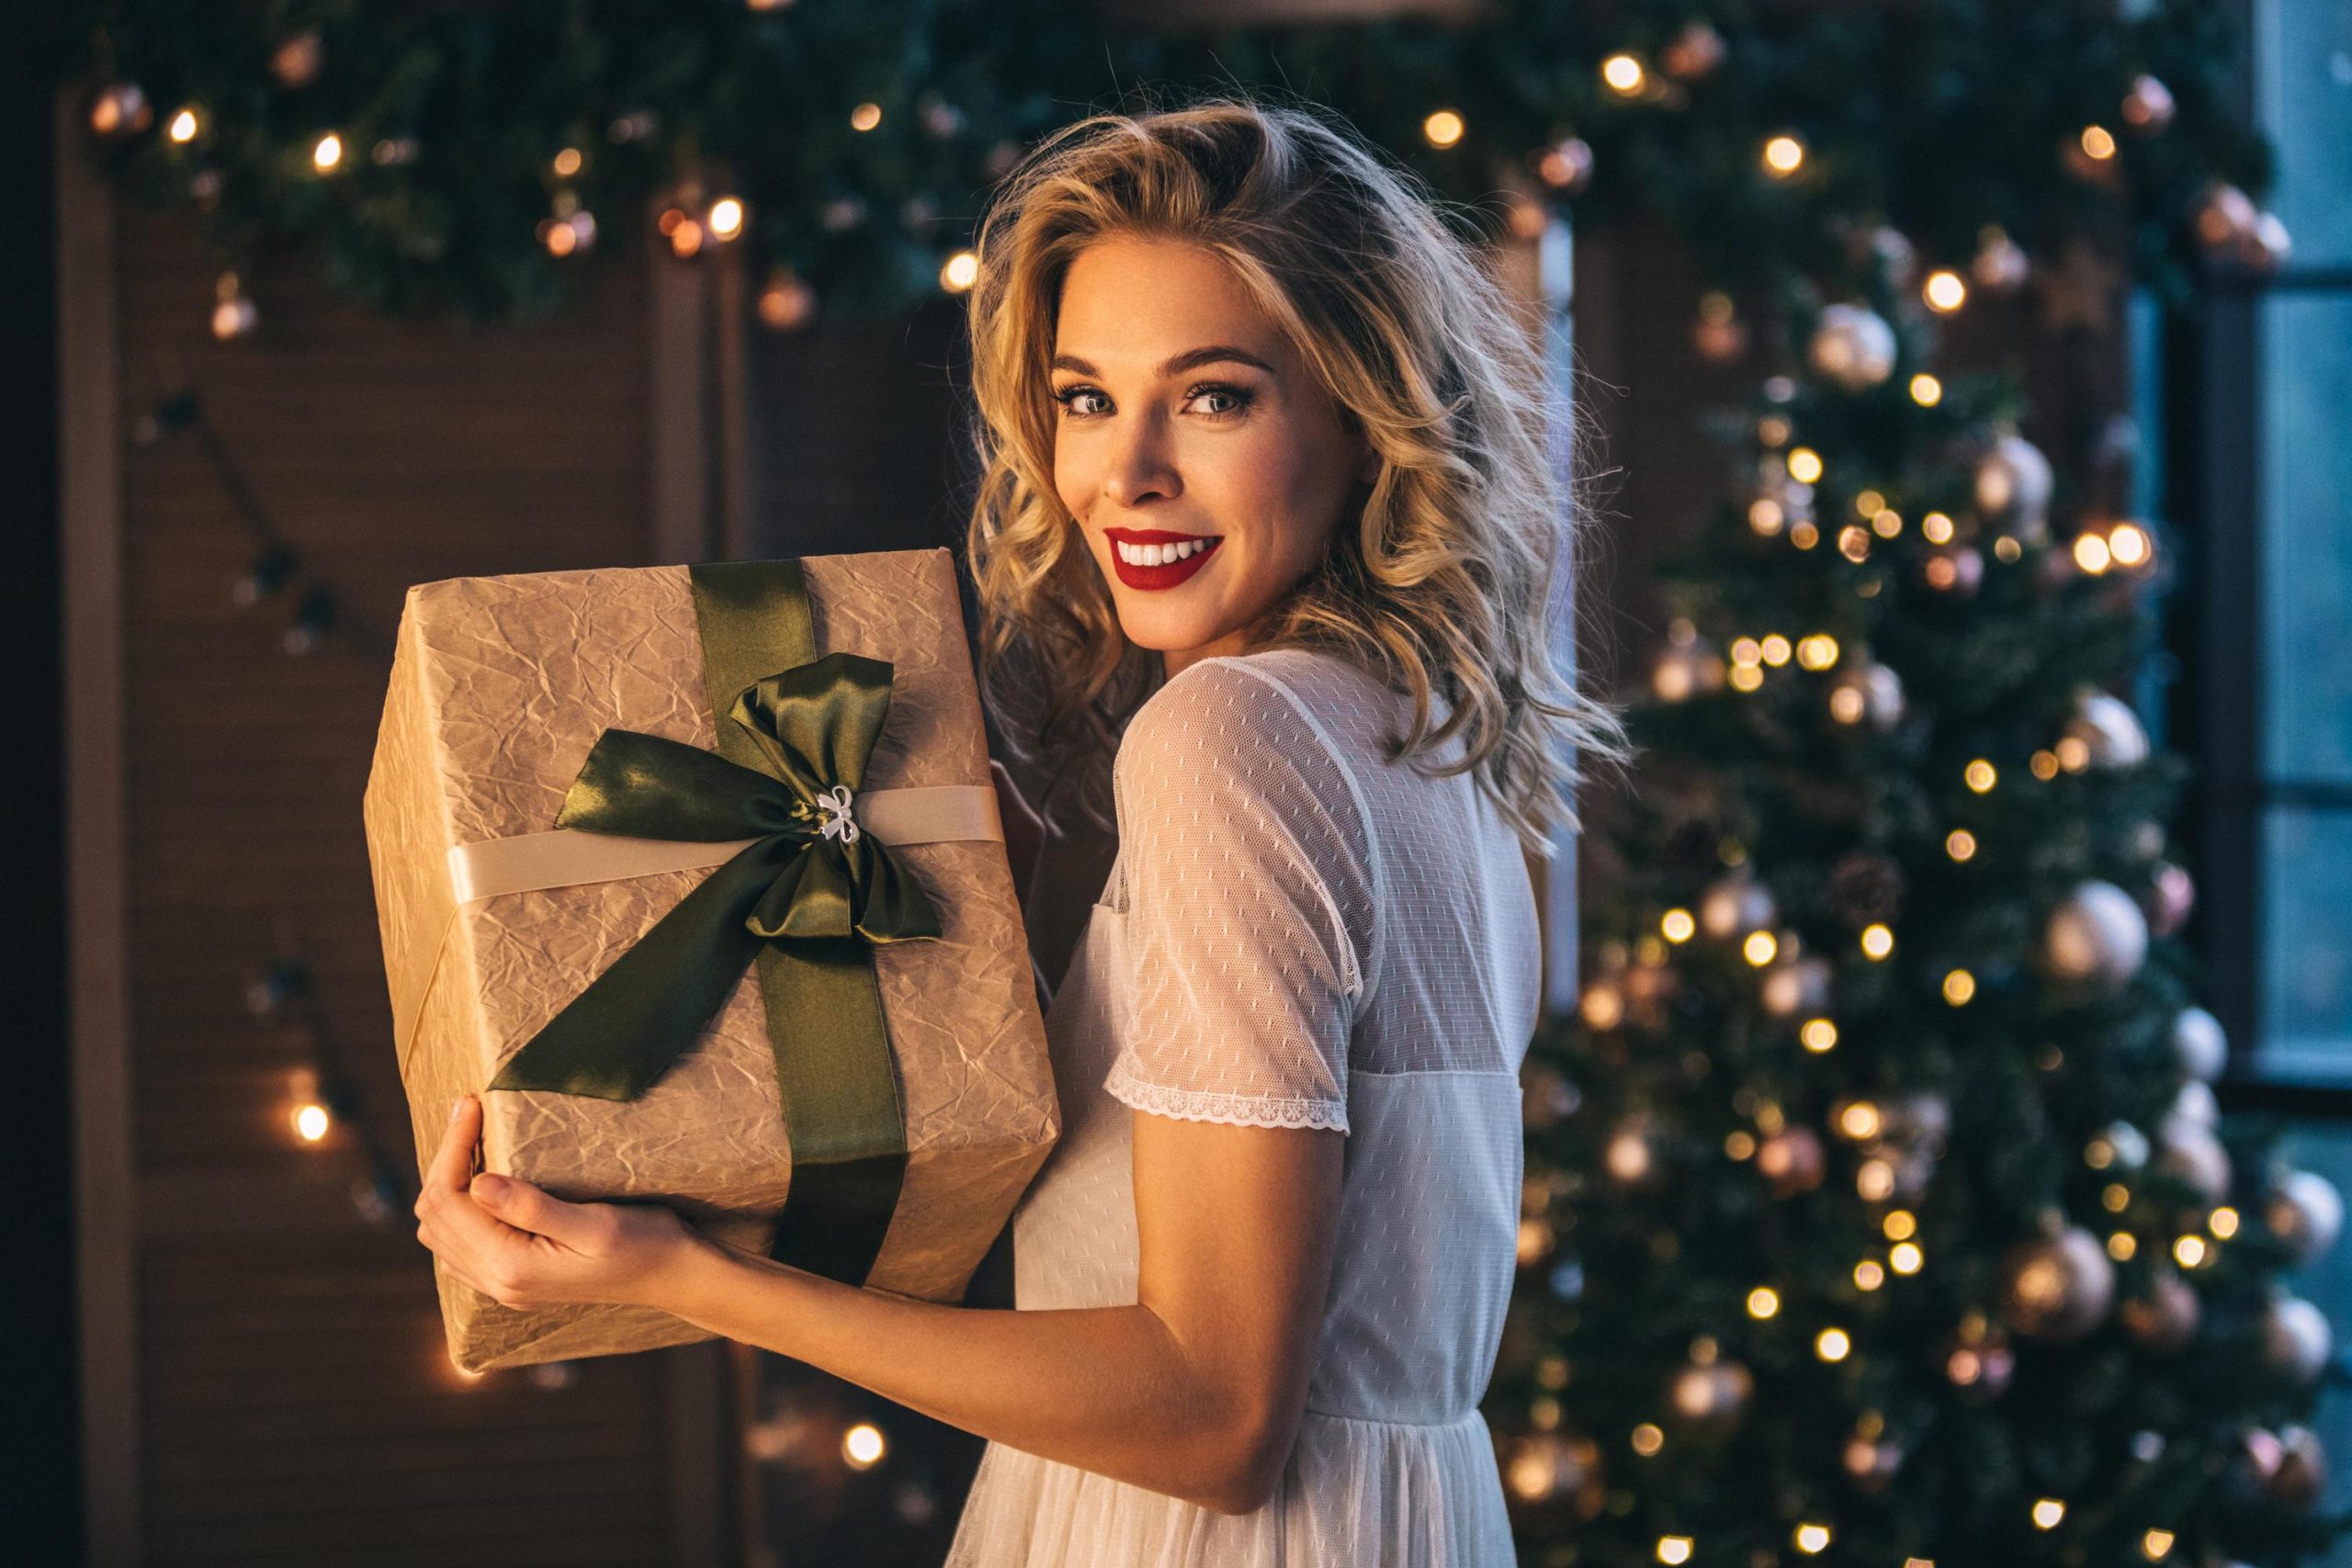 Tolle Weihnachtsgeschenke Für Ihre Liebste | Web.de ganzes Tolle Weihnachtsgeschenke Für Frauen